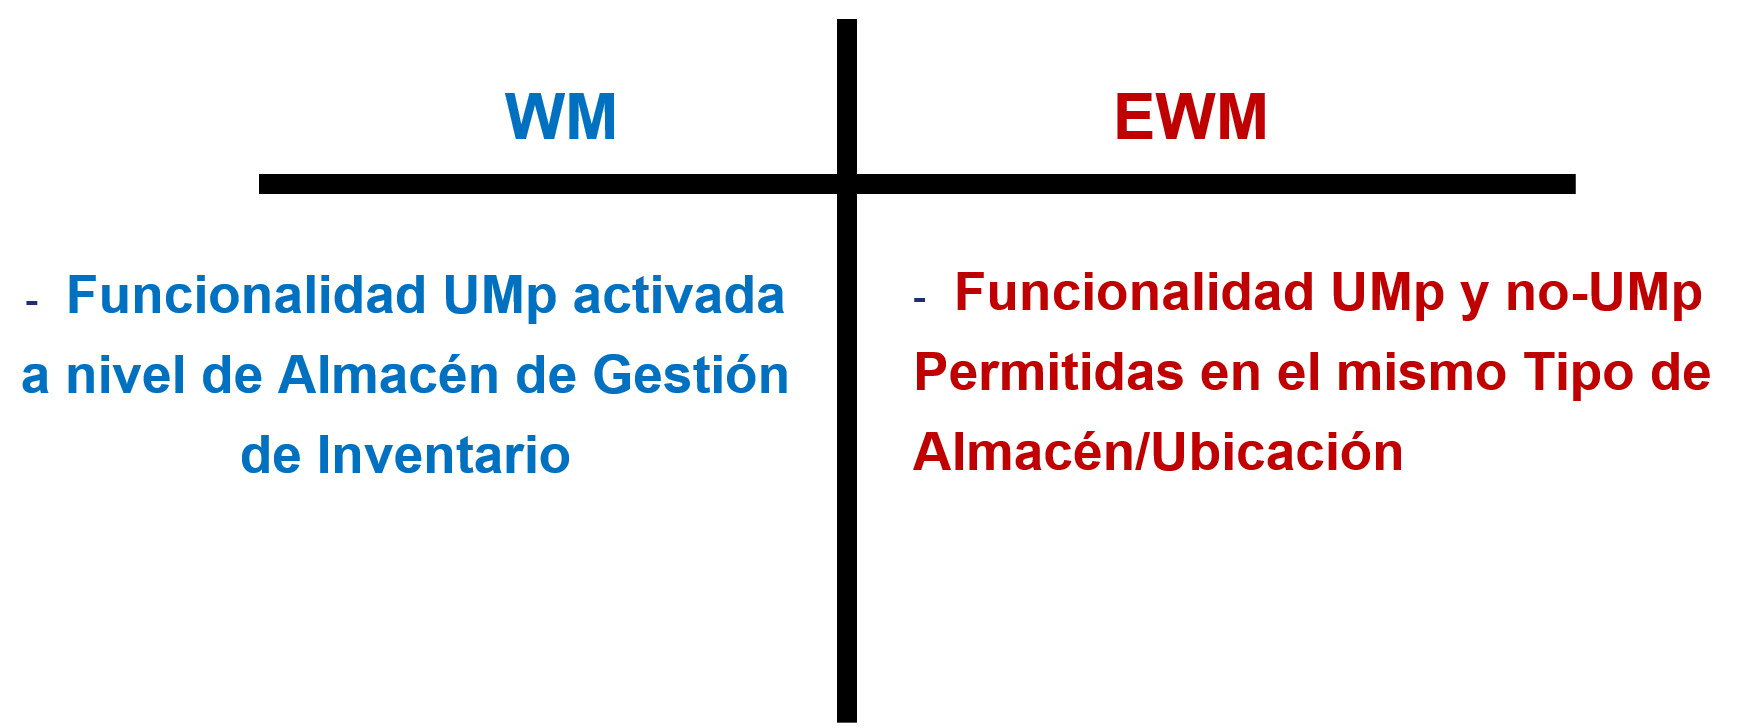 Funcionalidad de Unidad de Manipulación en IM vs EWM